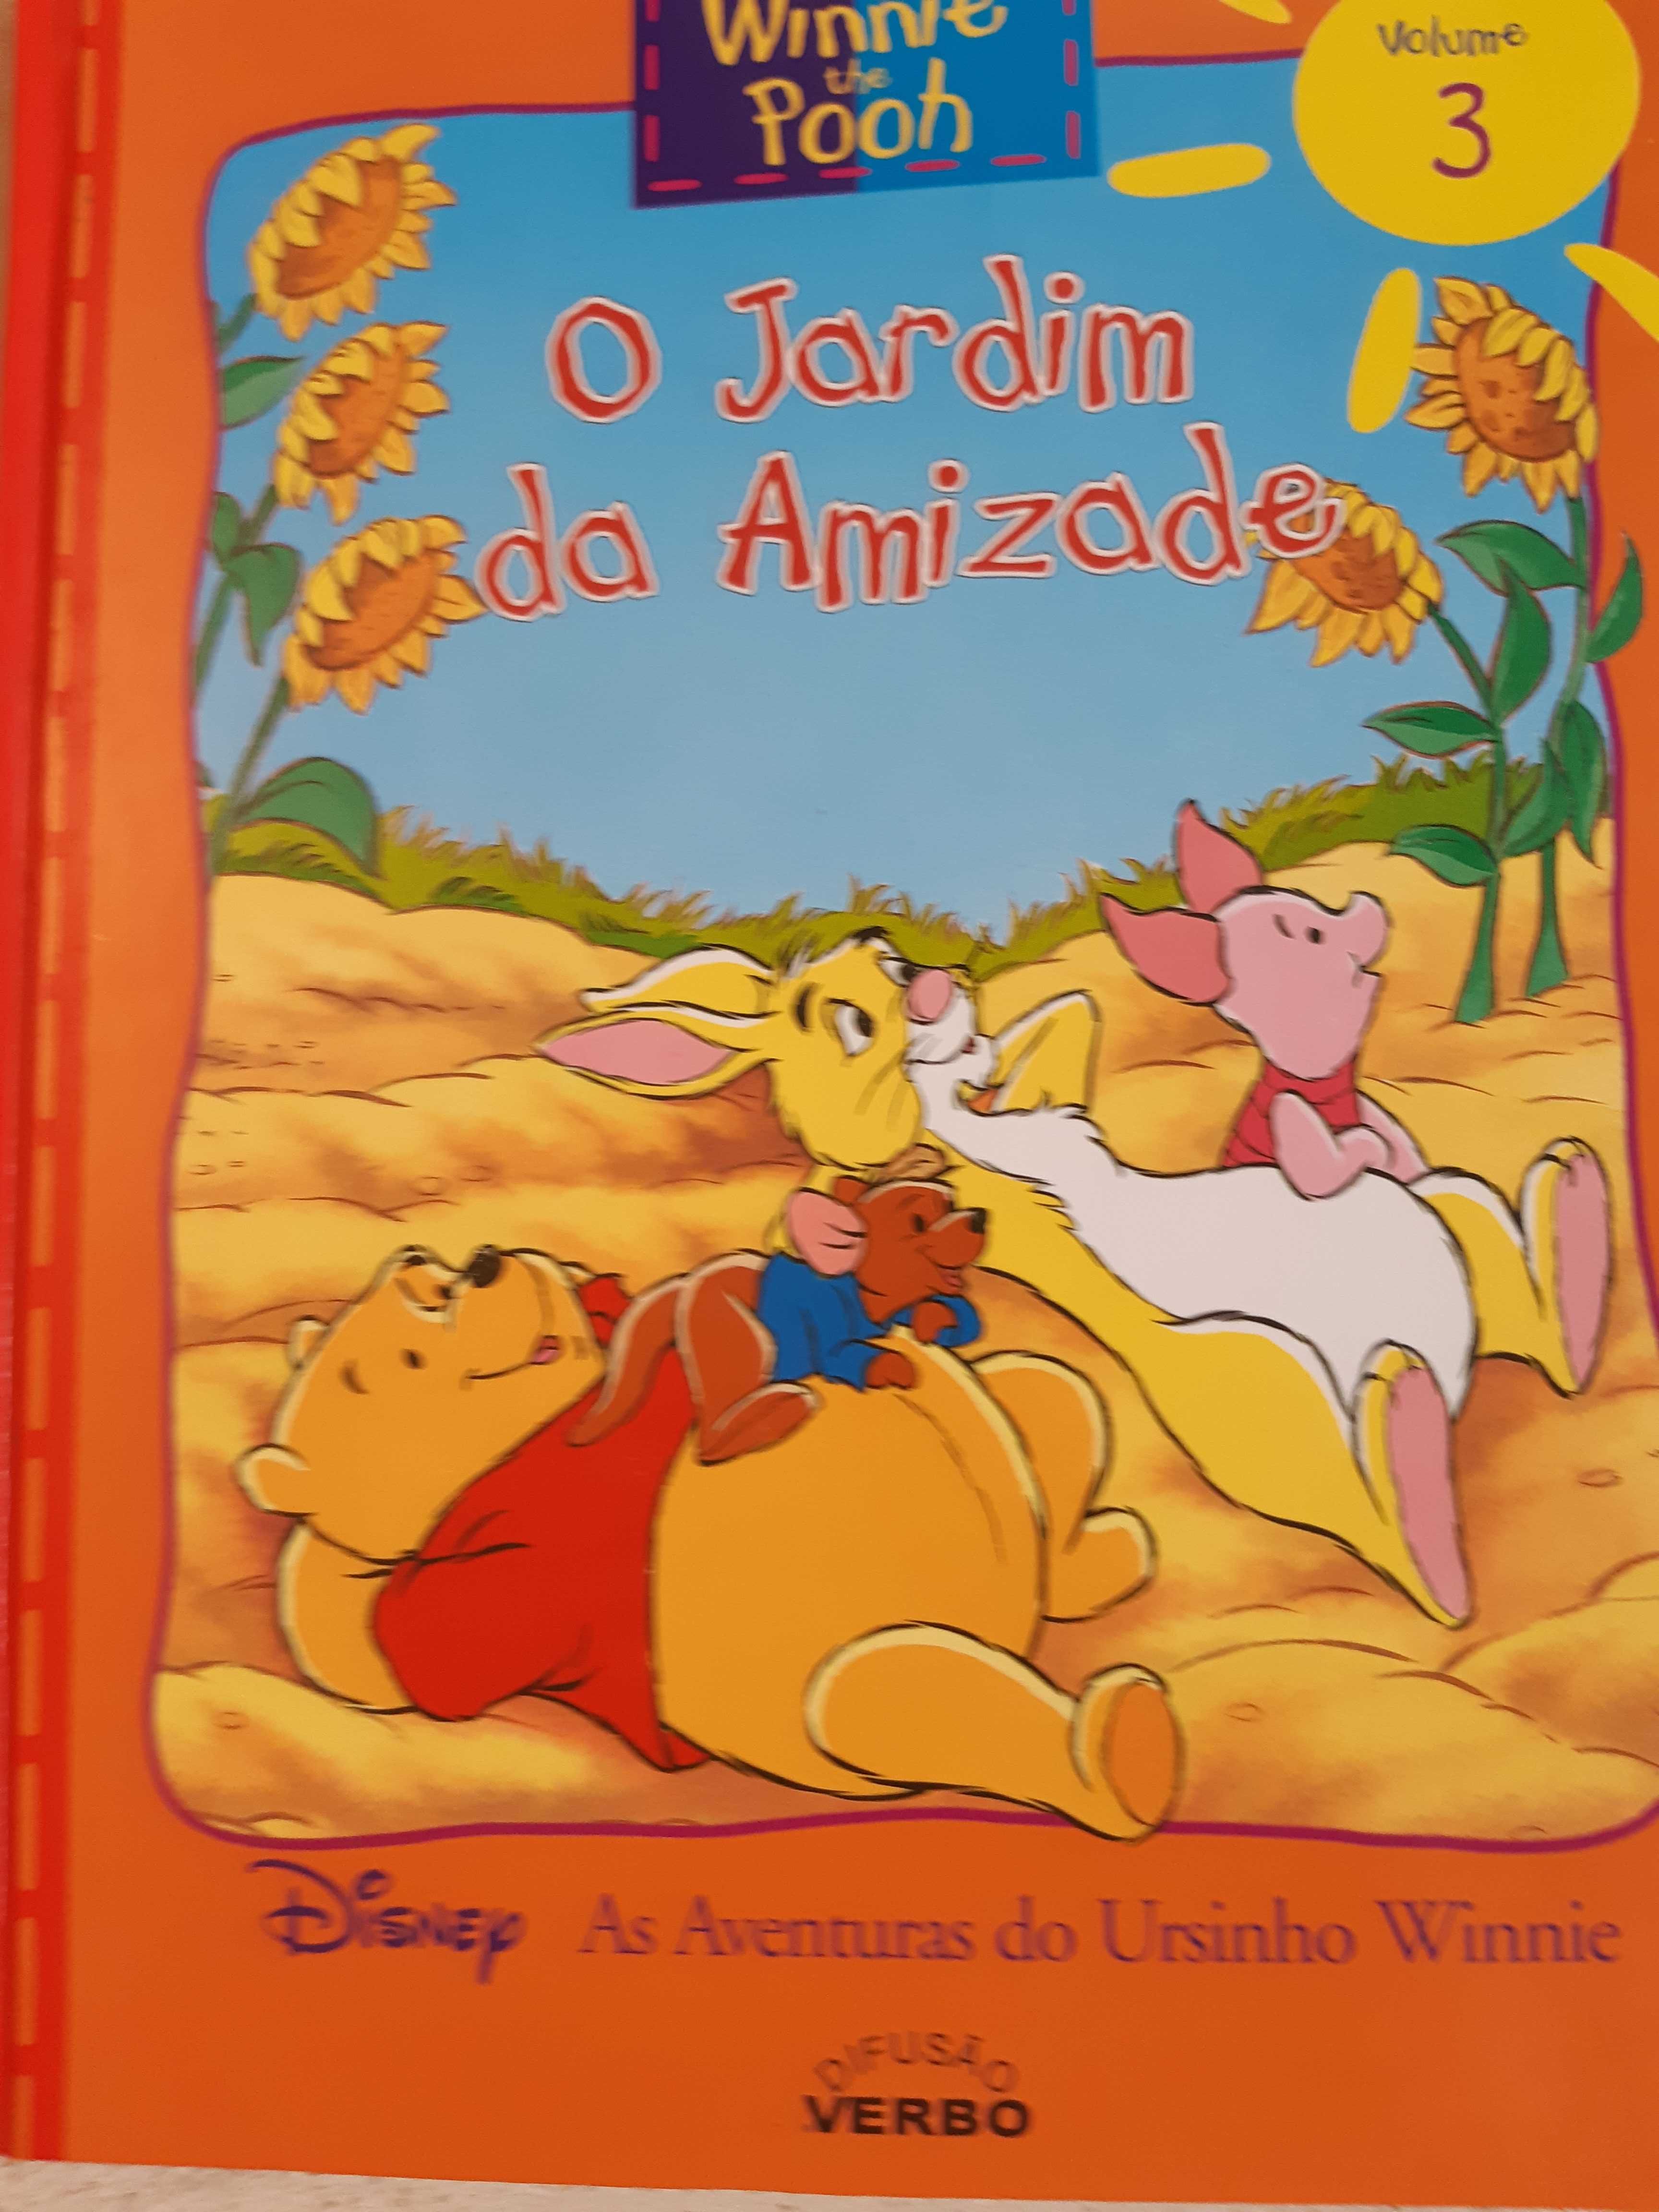 Coleção Livros Infantis Winnie the Pooh